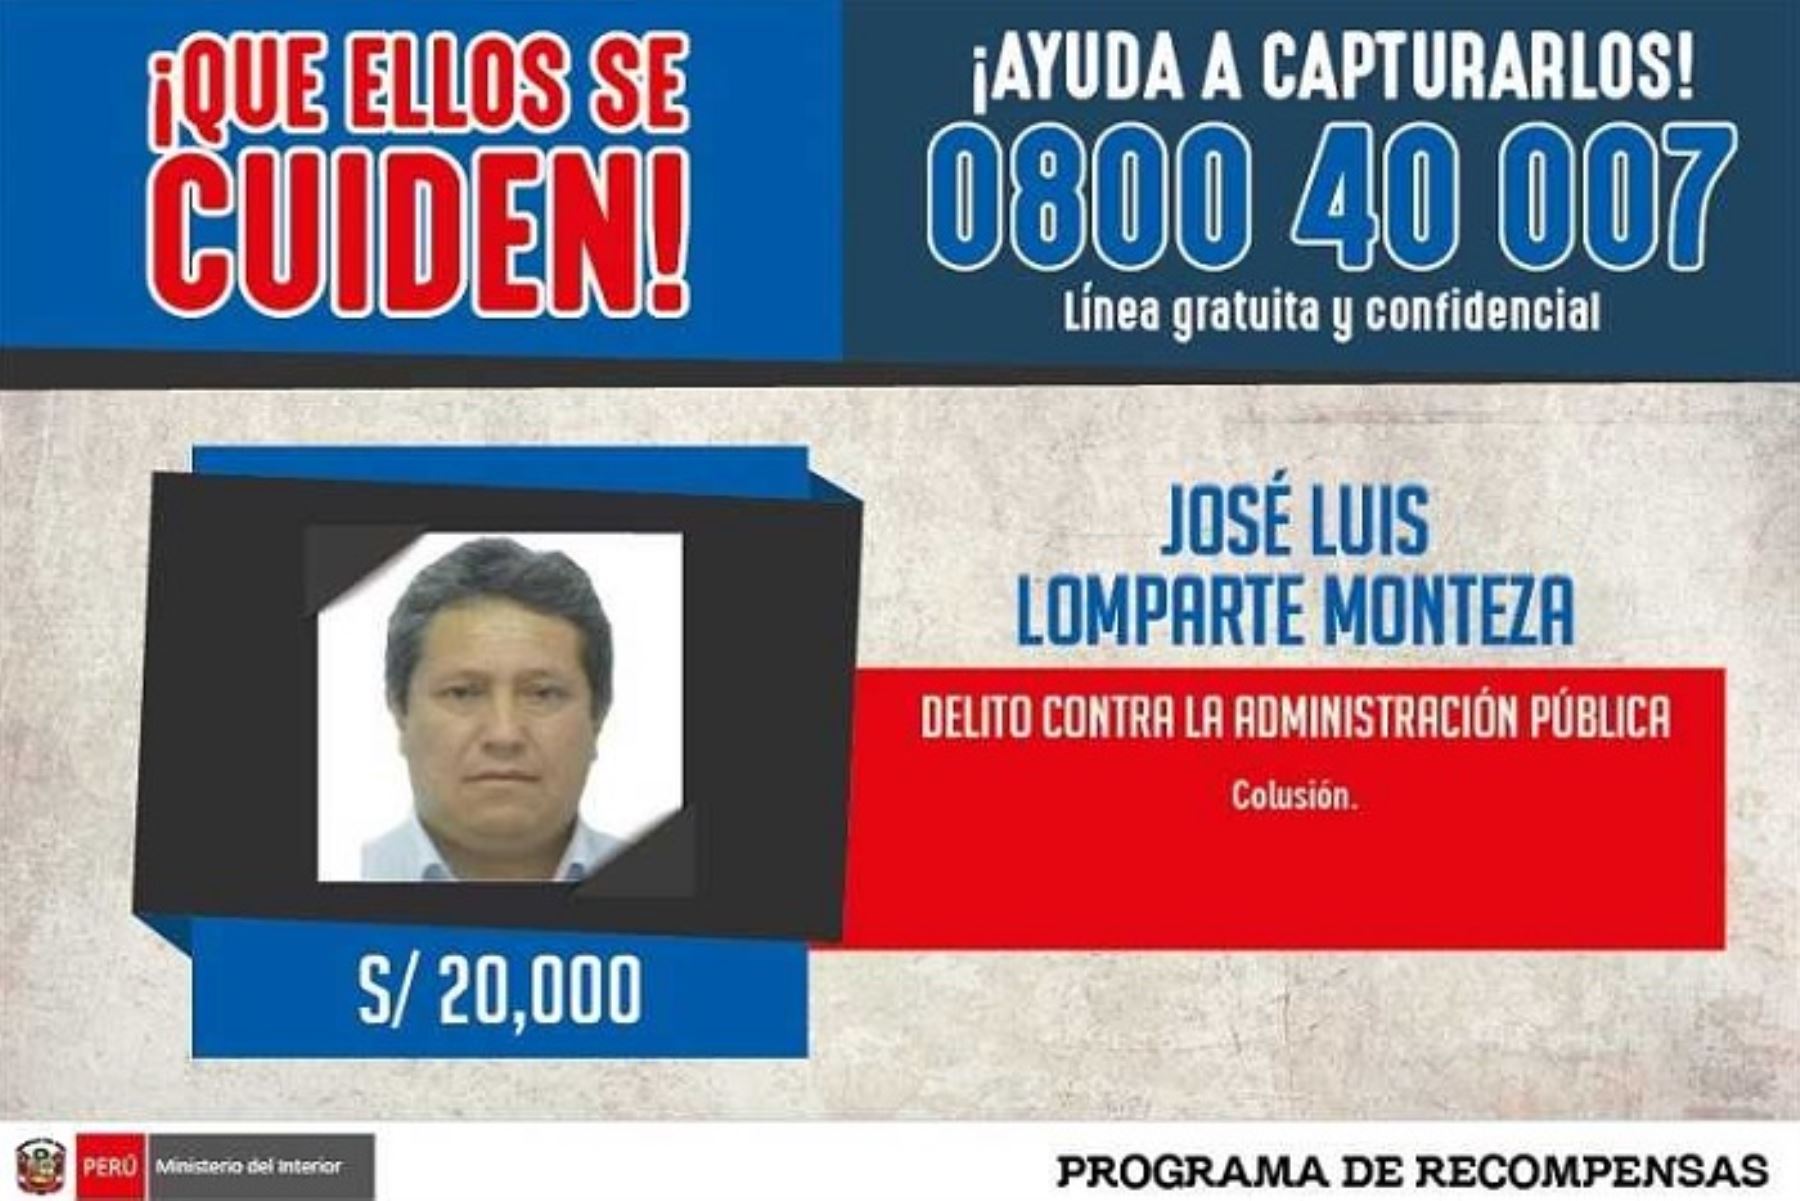 El exalcalde de la provincia ancashina de Casma, José Luis Lomparte Monteza, fue capturado en el distrito limeño de Carabayllo, luego de permanecer por más de cuatro años en condición de prófugo de la justicia por una sentencia de 5 años de cárcel por el delito de colusión.